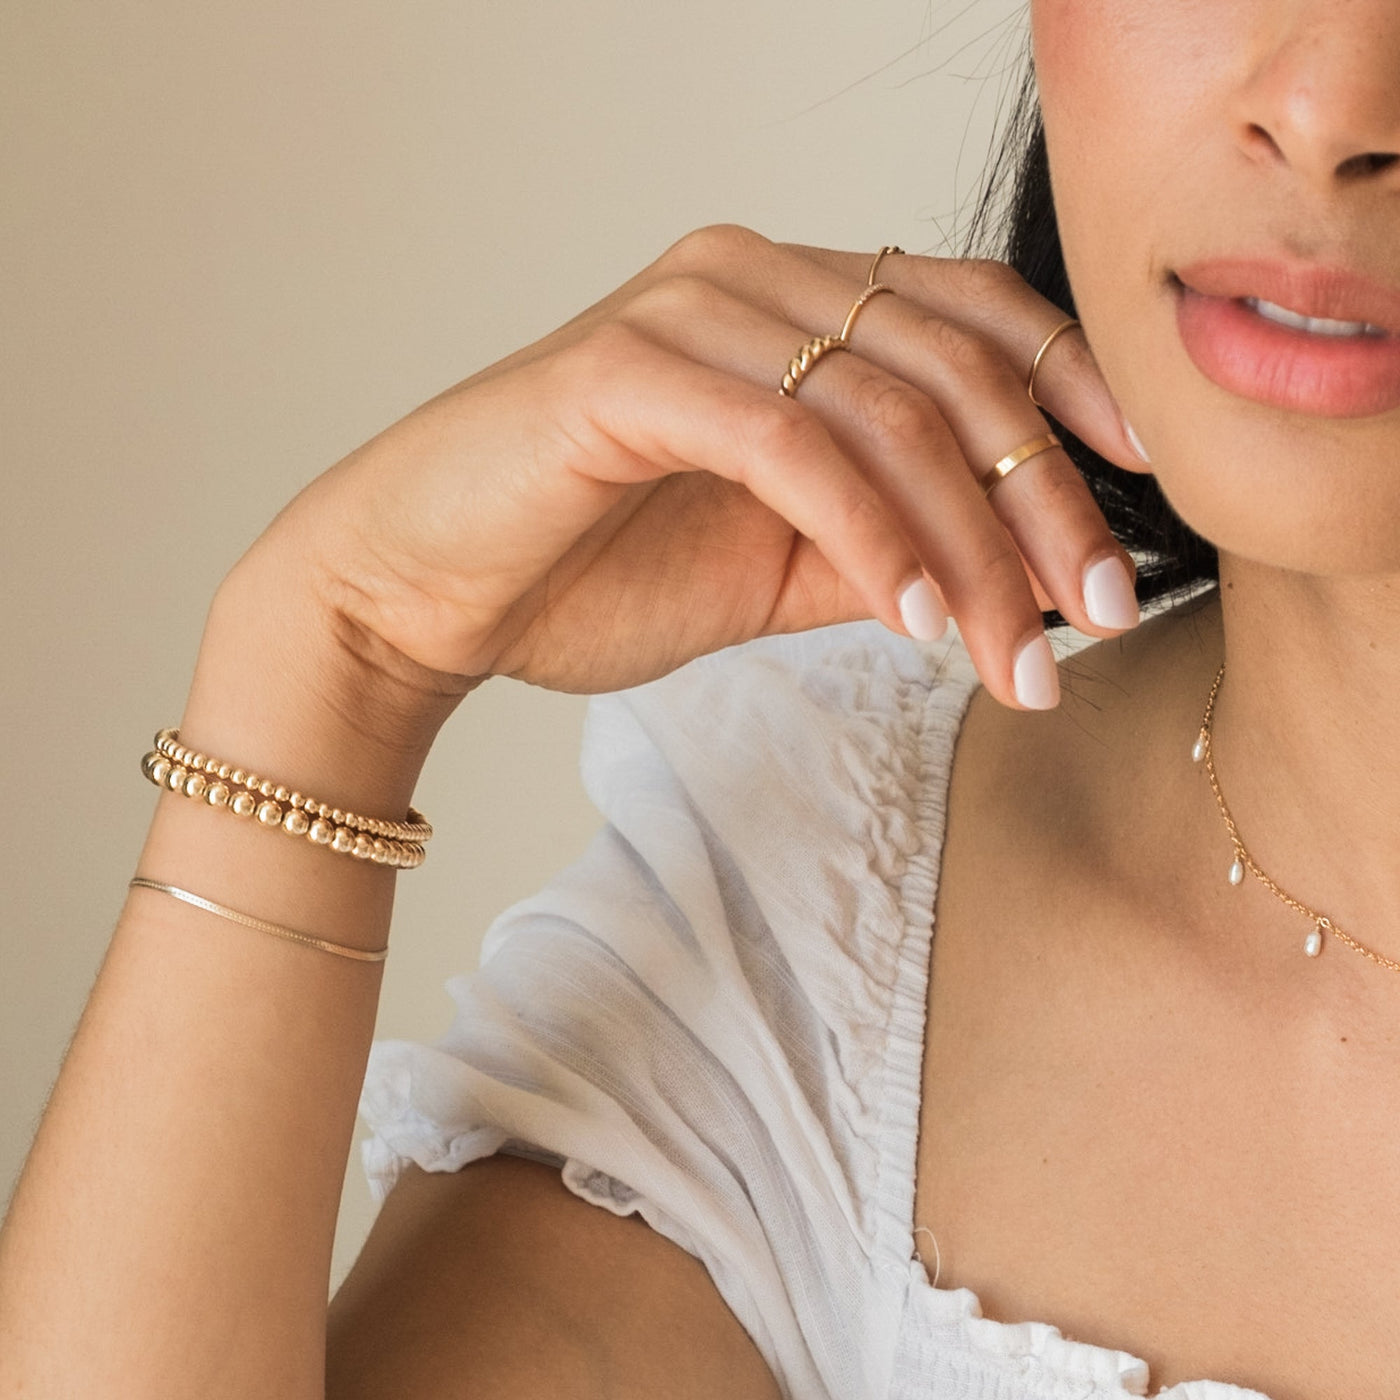 Dainty Herringbone Bracelet | Simple & Dainty Jewelry